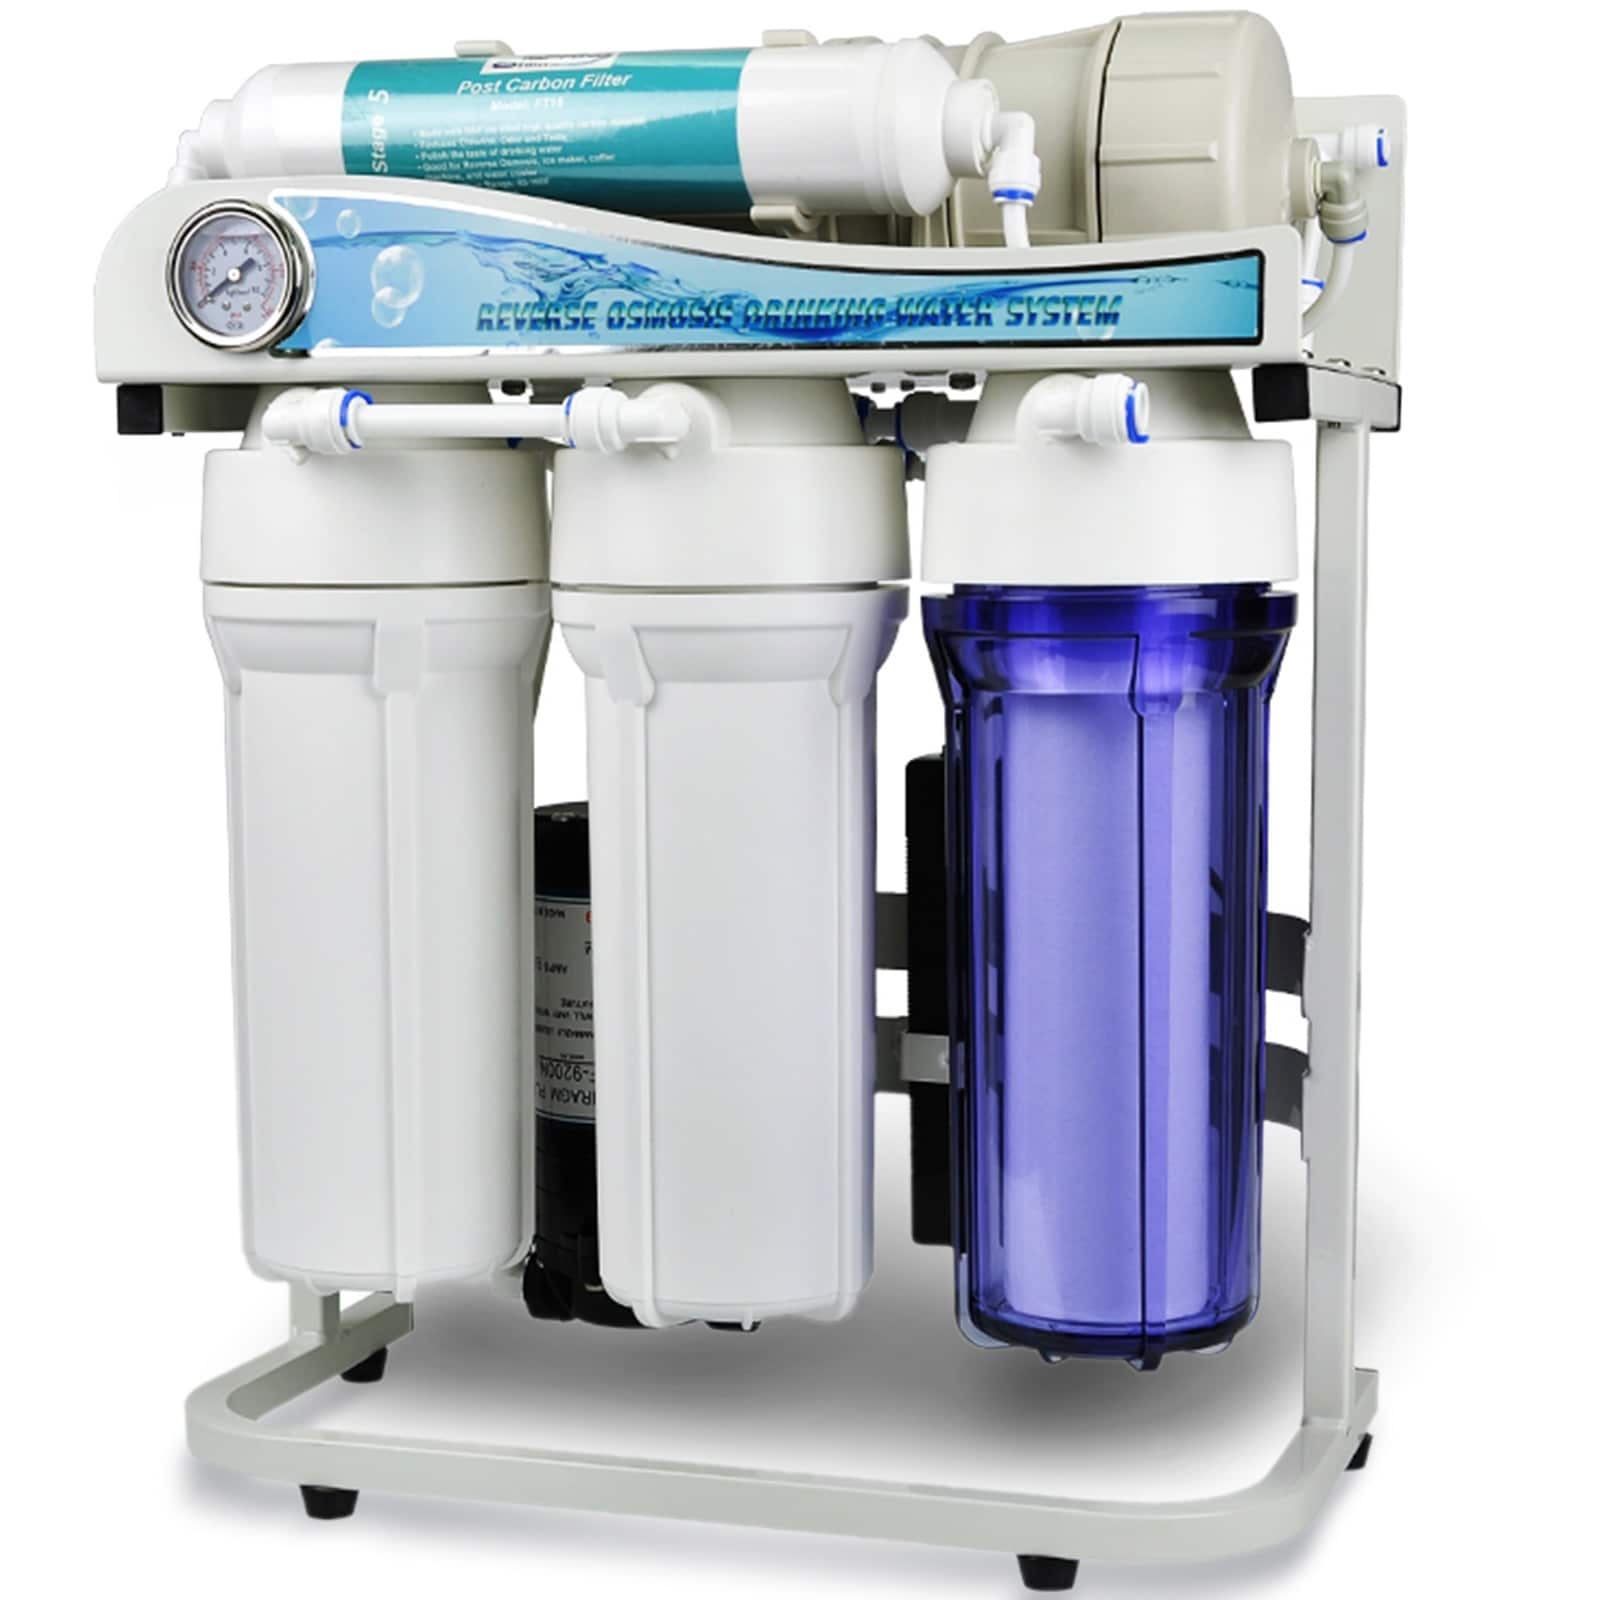 Осмос для питьевой воды. Фильтры Water quality Reverse Osmosis System. Ro-600 обратный осмос. Фильтр для воды Reverse Osmosis. Фильтр обратного осмоса 75.